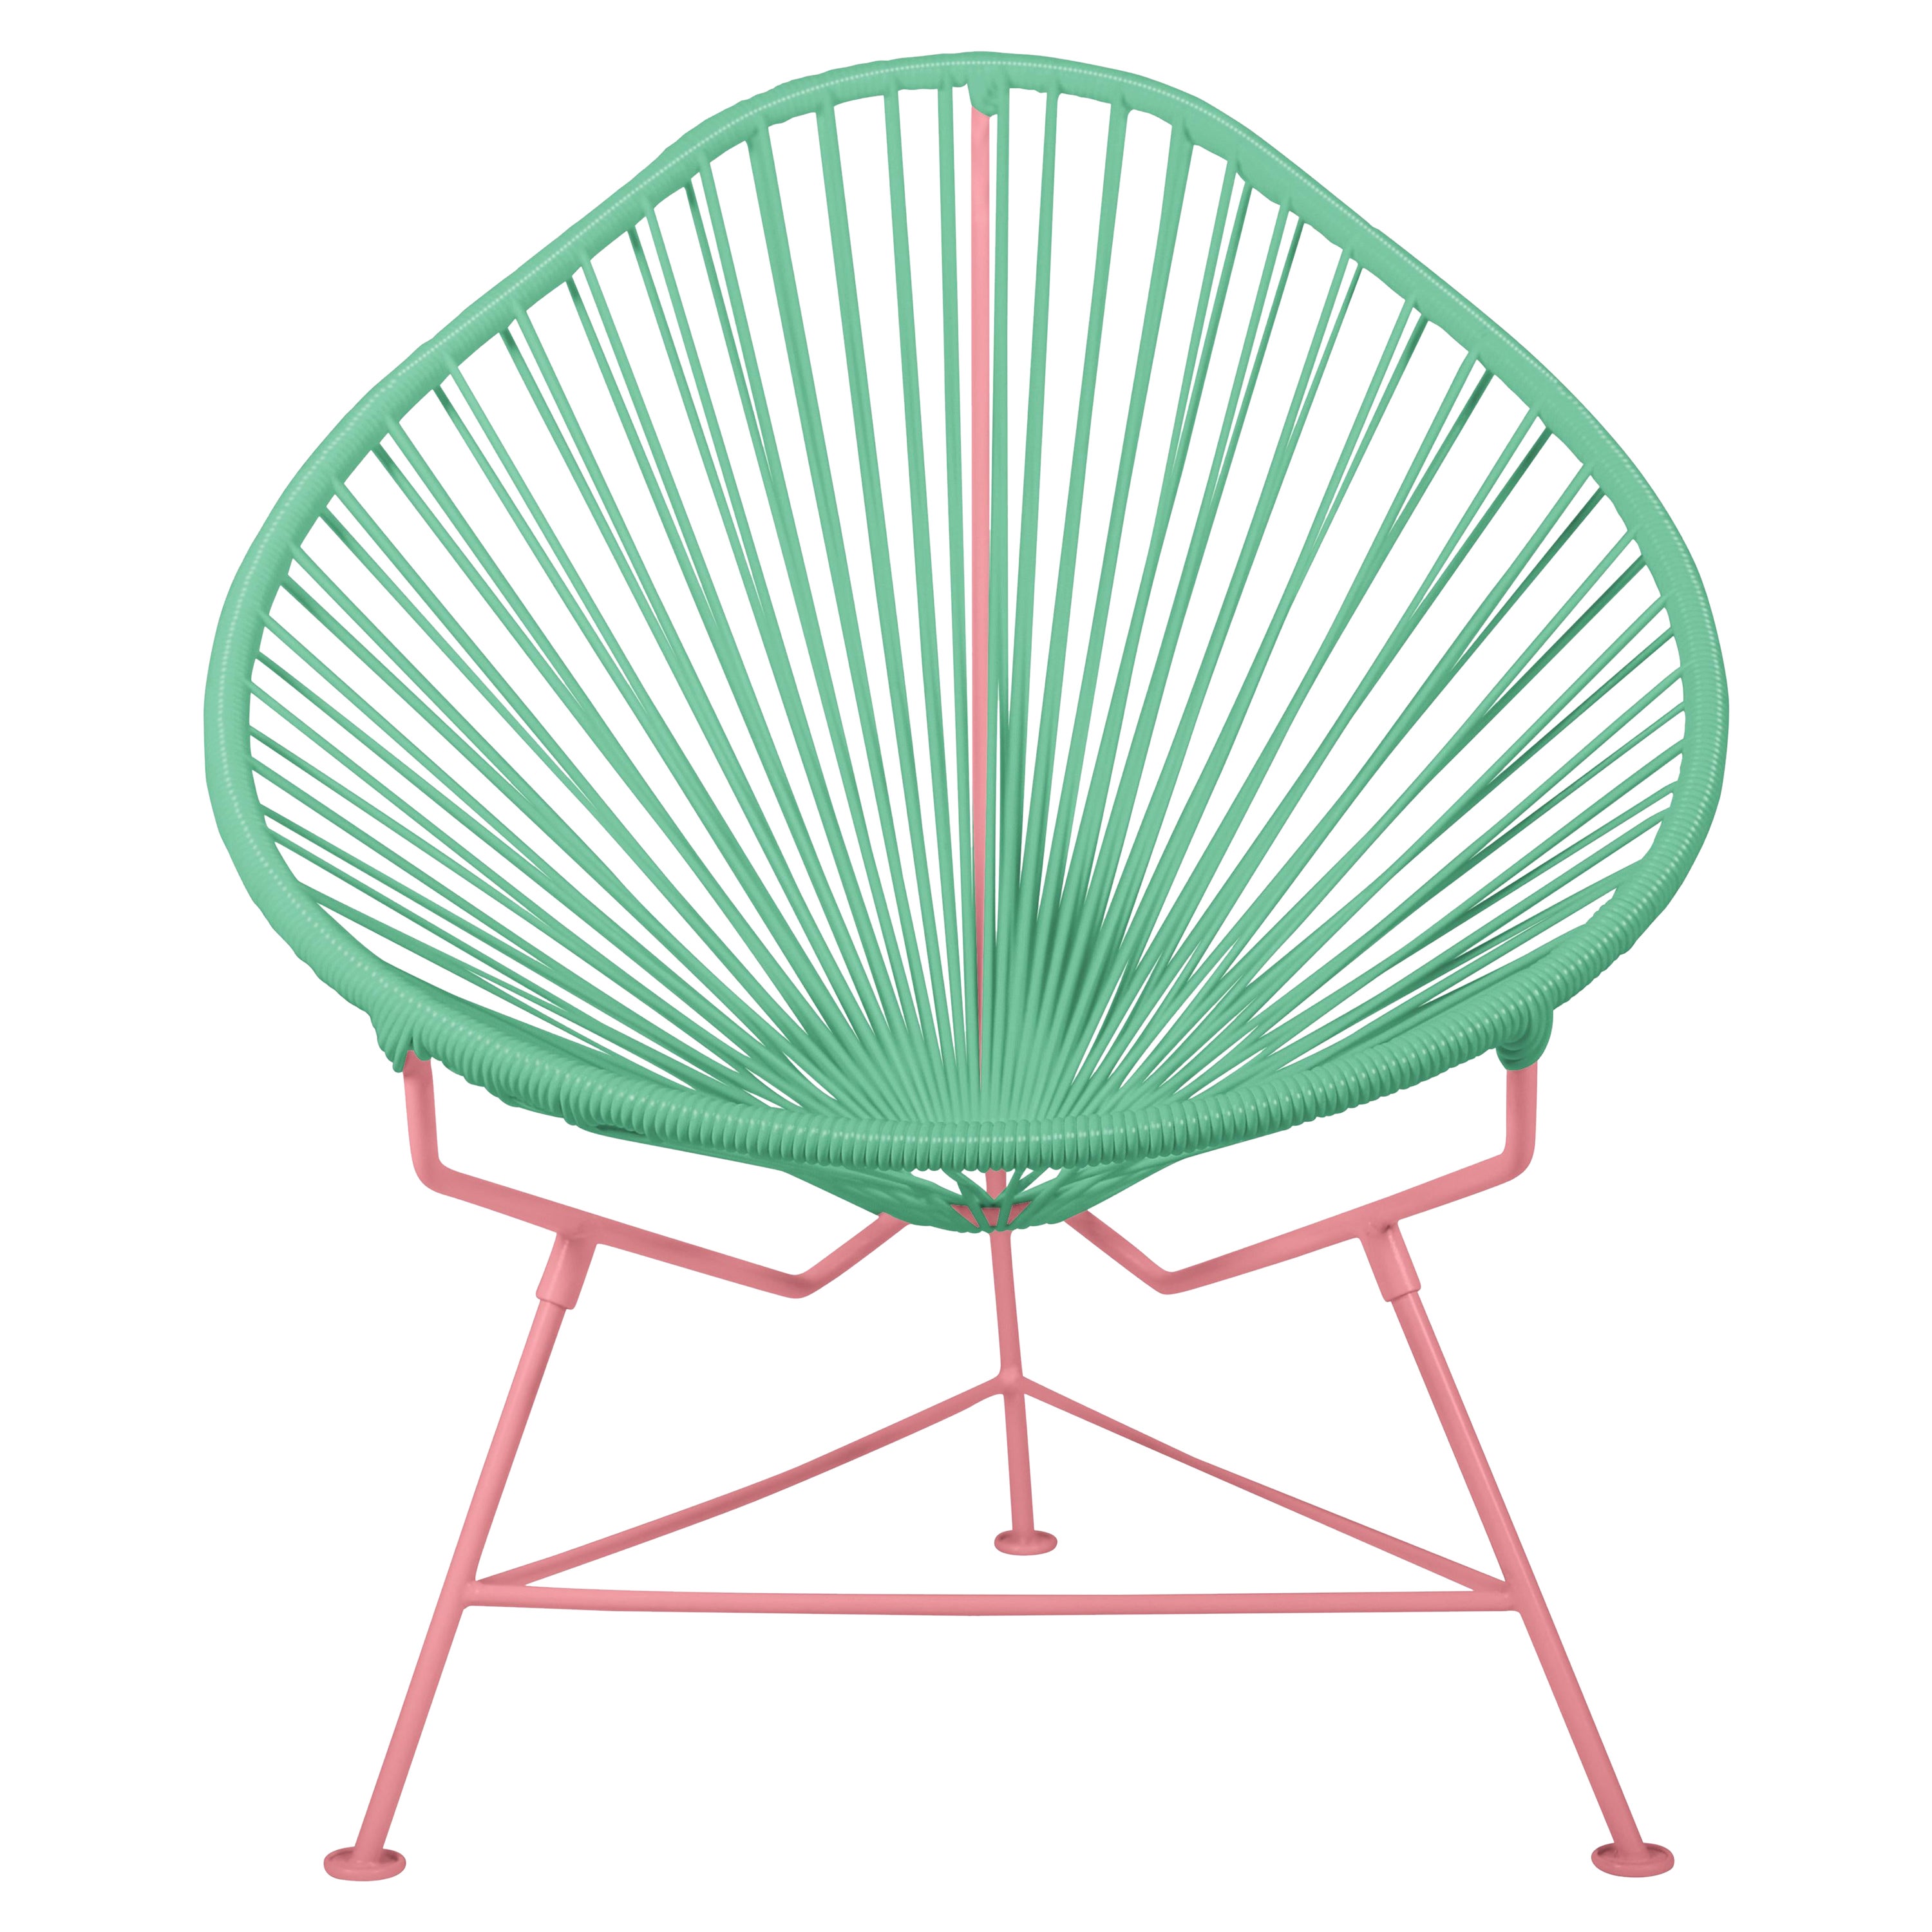 Innit Designs fauteuil Acapulco tissé couleur menthe sur cadre corail